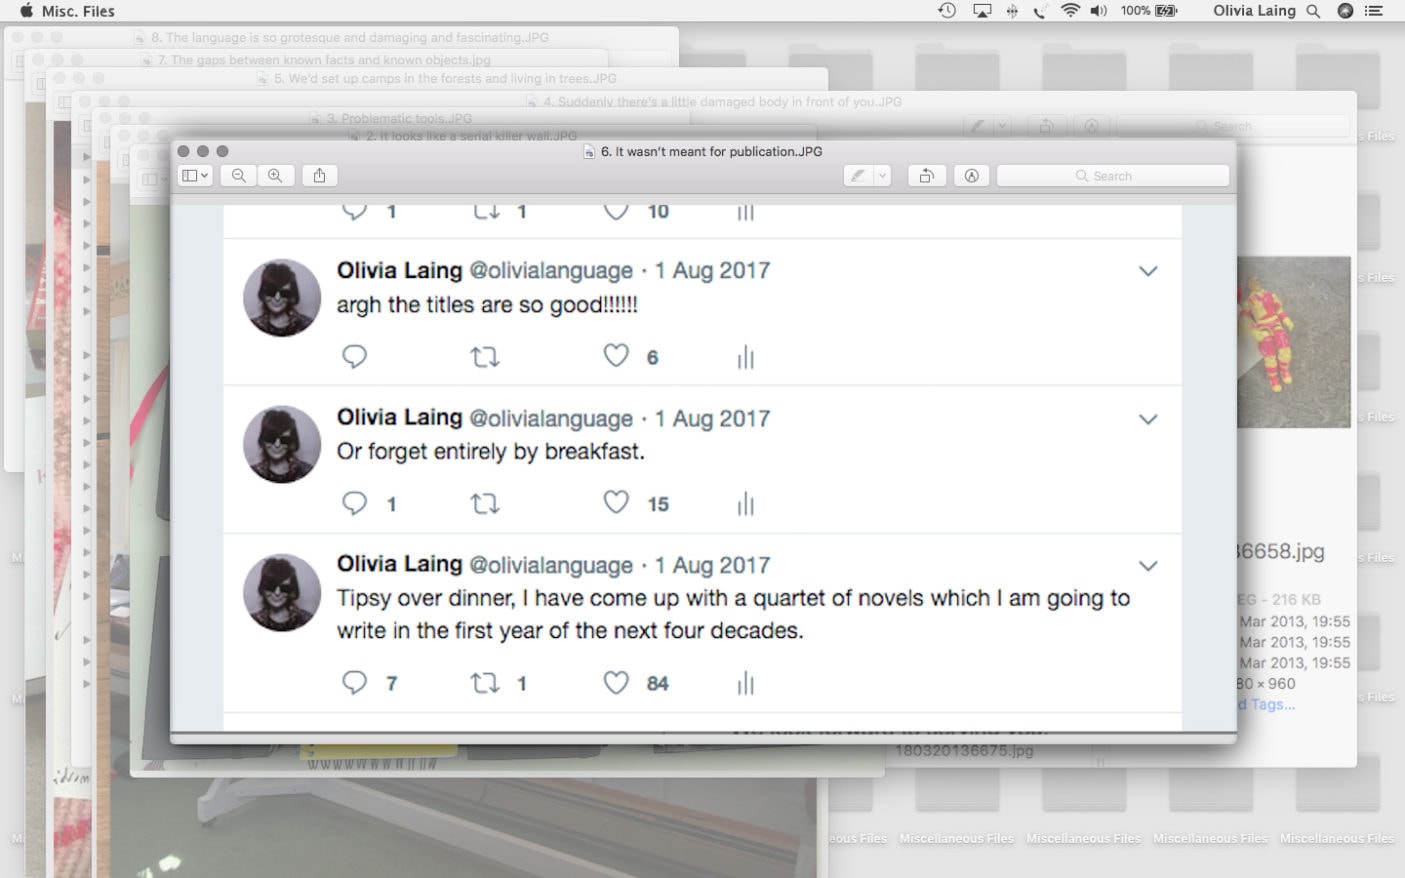 Olivia Laing Crudo tweets